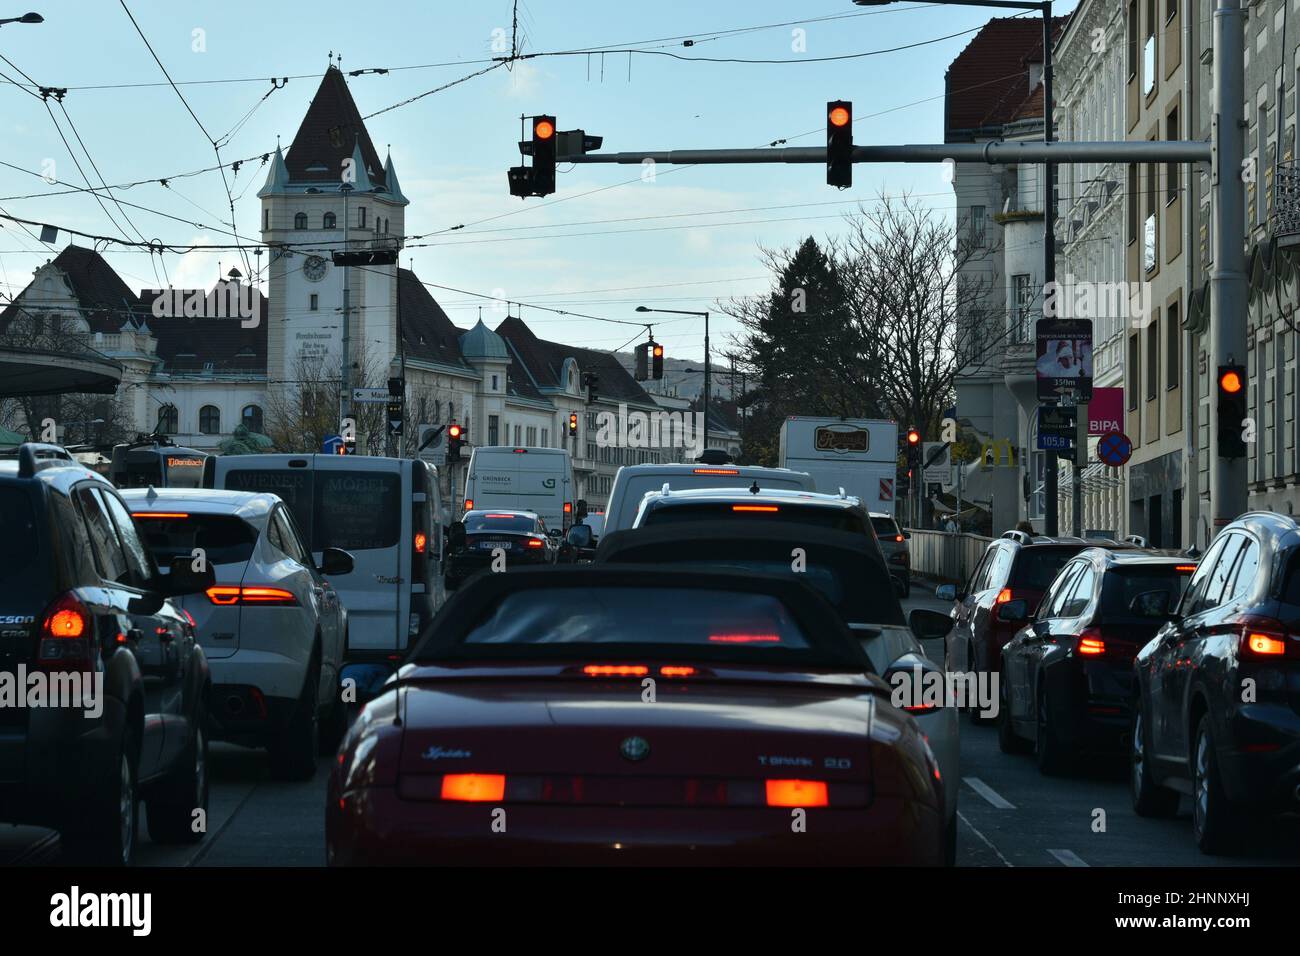 Verkehrsstau vor einer Ampel am Abend in Wien, Österreich, Europa - Stau vor einer Ampel am Abend in Wien, Österreich, Europa Stockfoto